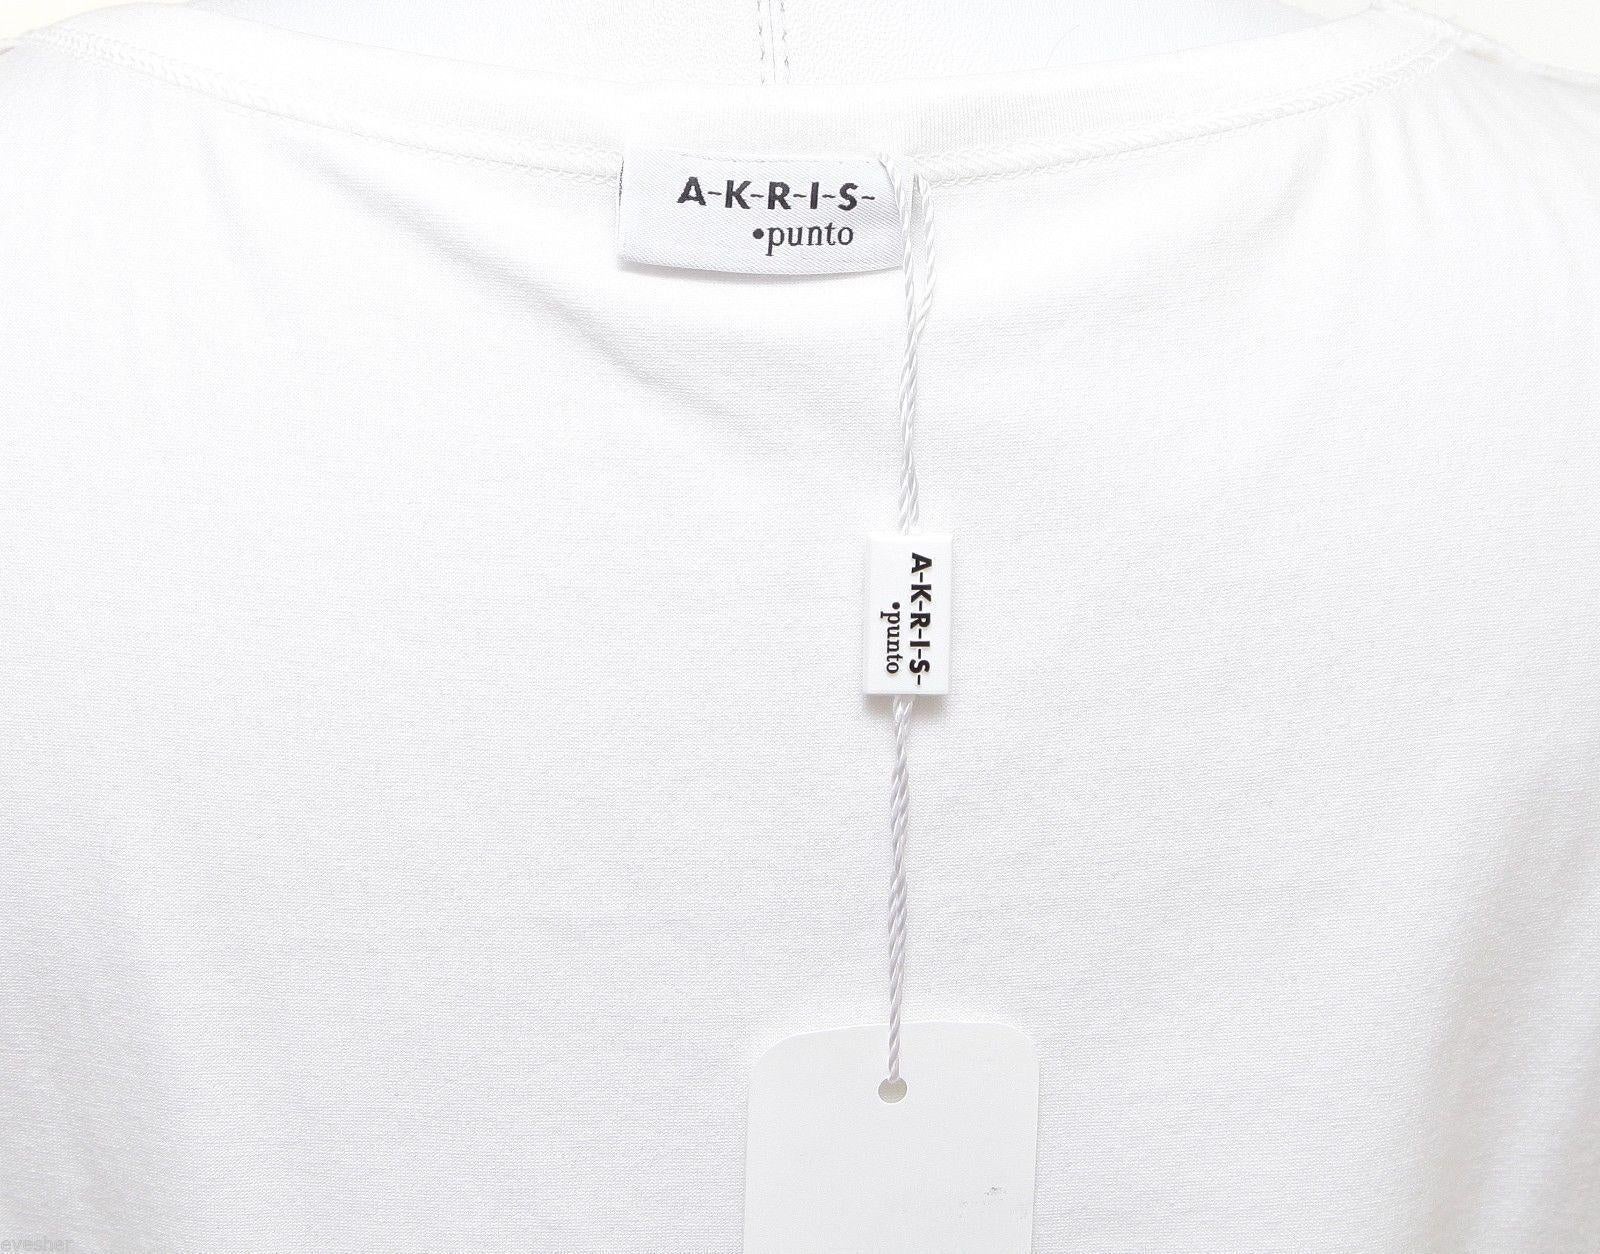 AKRIS PUNTO White Top Cotton Blouse Dress Shirt Magenta Sleeveless Shell 10 For Sale 1